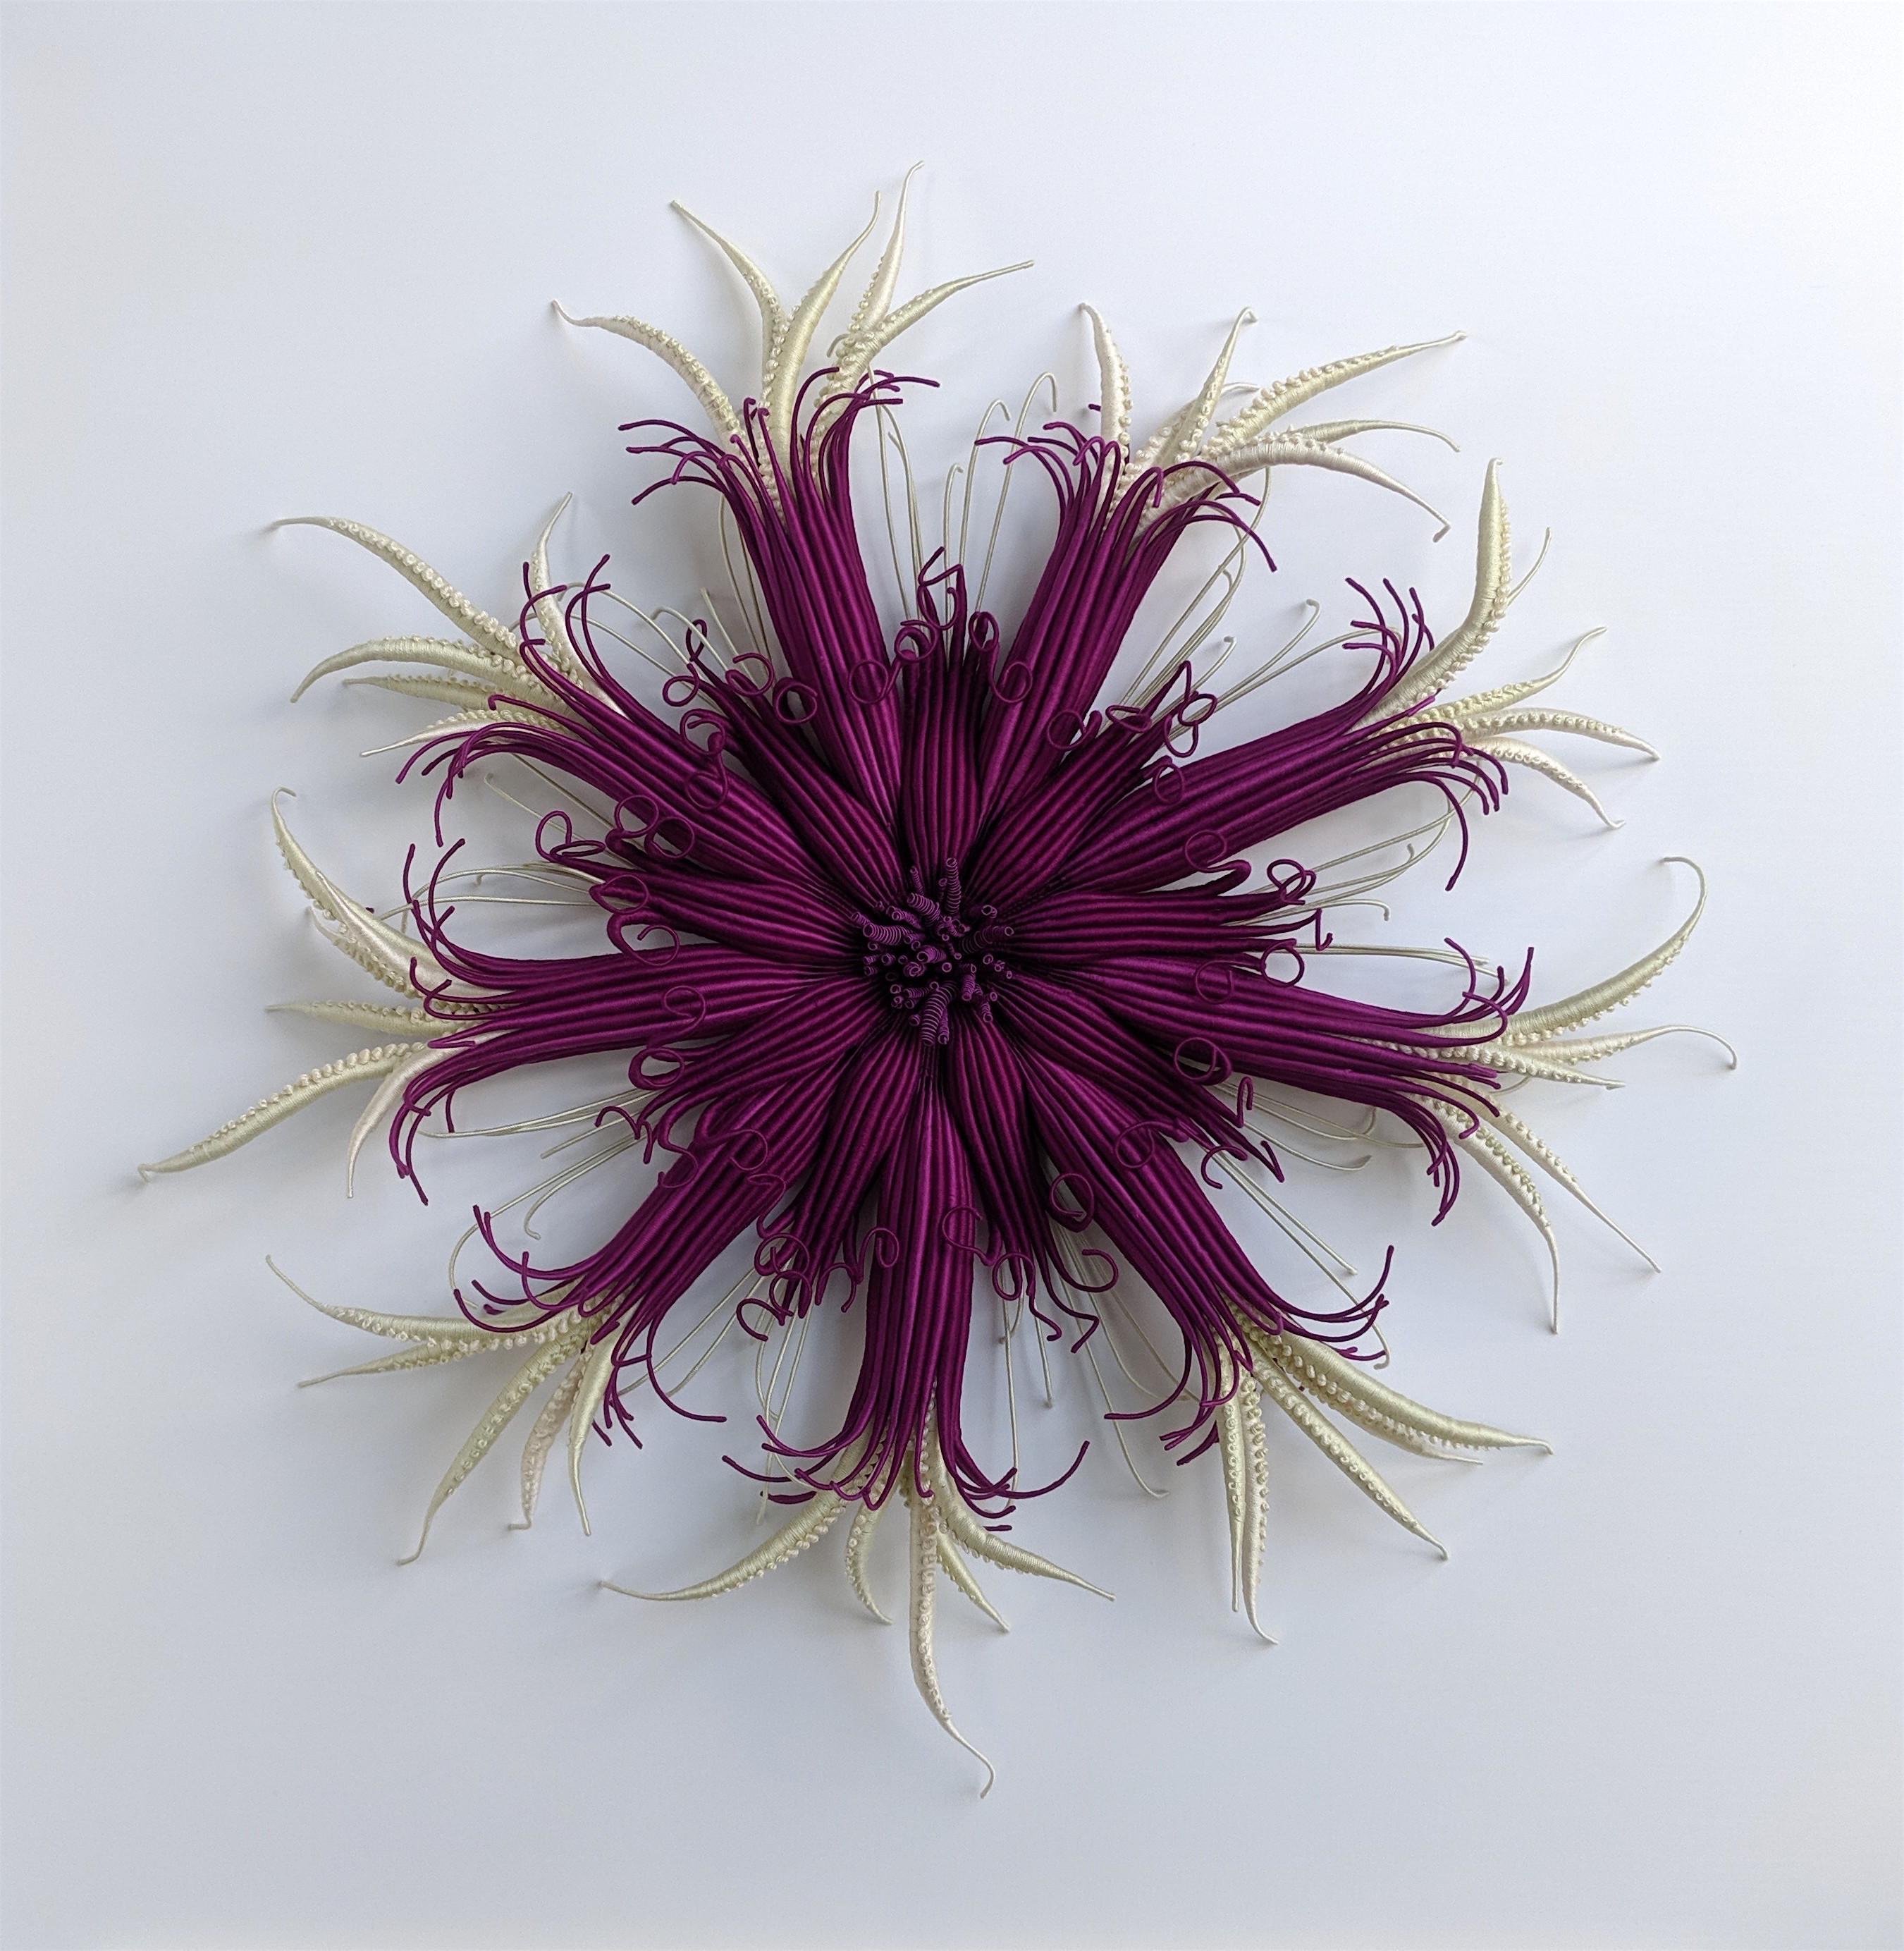 Specimen Sixteen, gerahmte, von der Natur inspirierte, handgefärbte Faserskulptur, lila